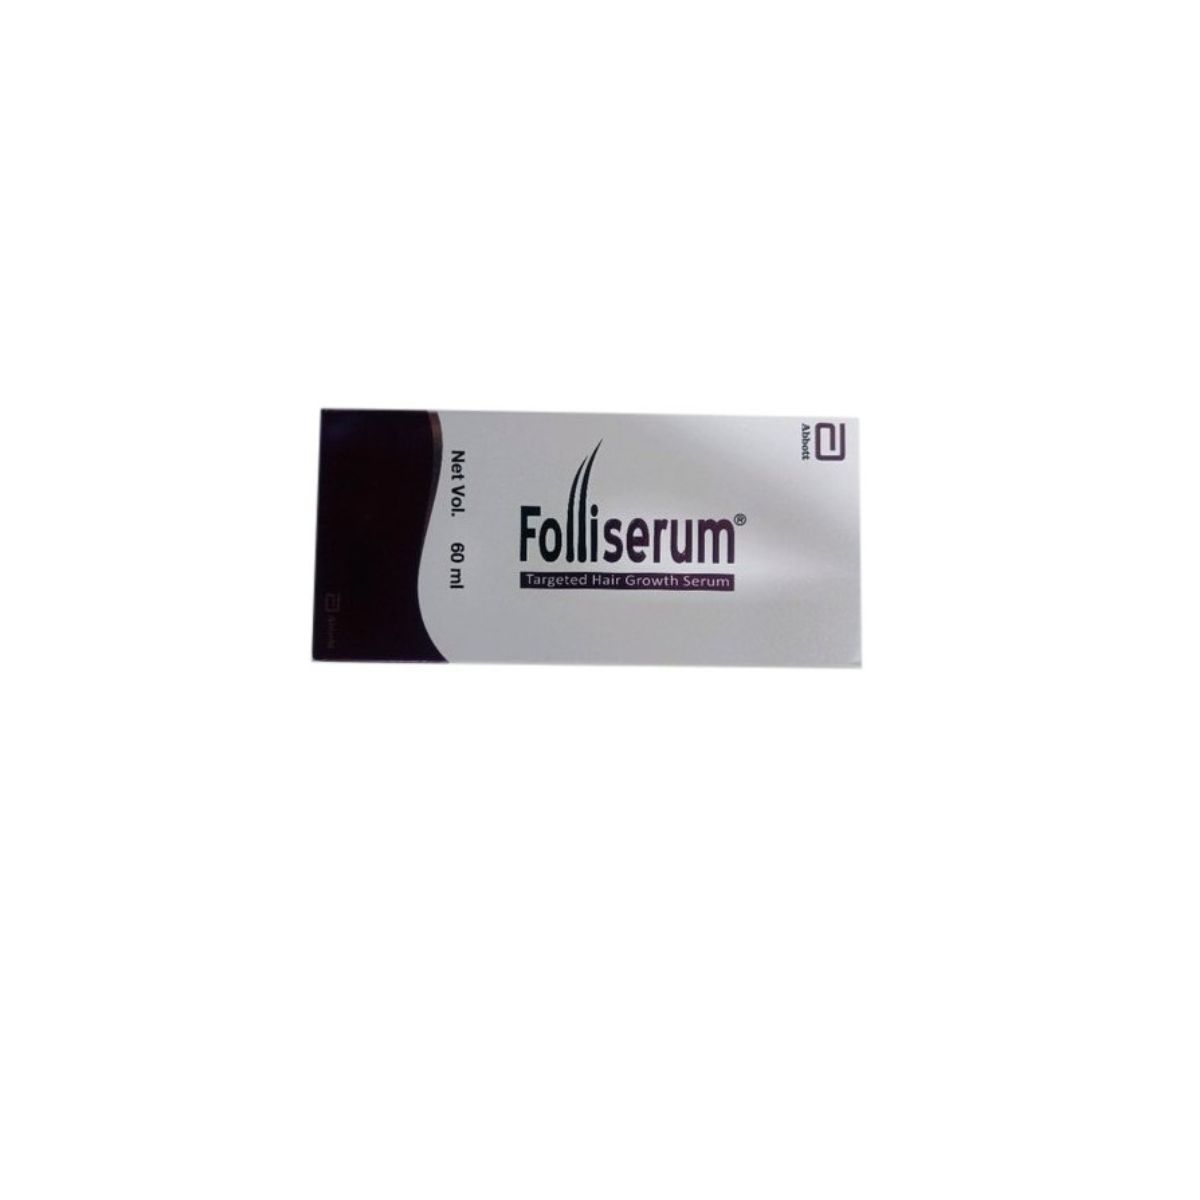 Abbott Folliserum Targeted Hair Growth Concentrate - Price in India, Buy  Abbott Folliserum Targeted Hair Growth Concentrate Online In India,  Reviews, Ratings & Features | Flipkart.com